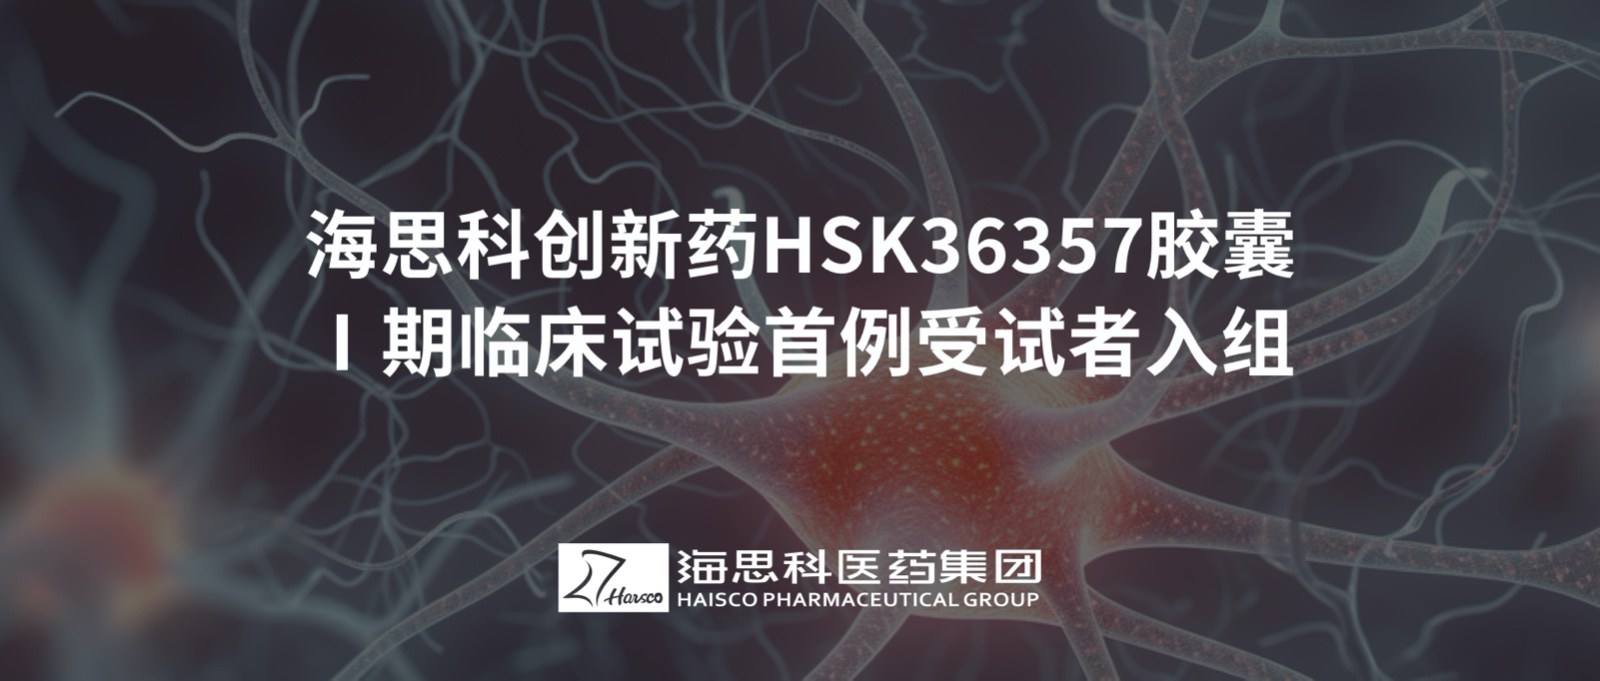 亚洲bet356官网创新药HSK36357胶囊Ⅰ期临床试验首例受试者入组